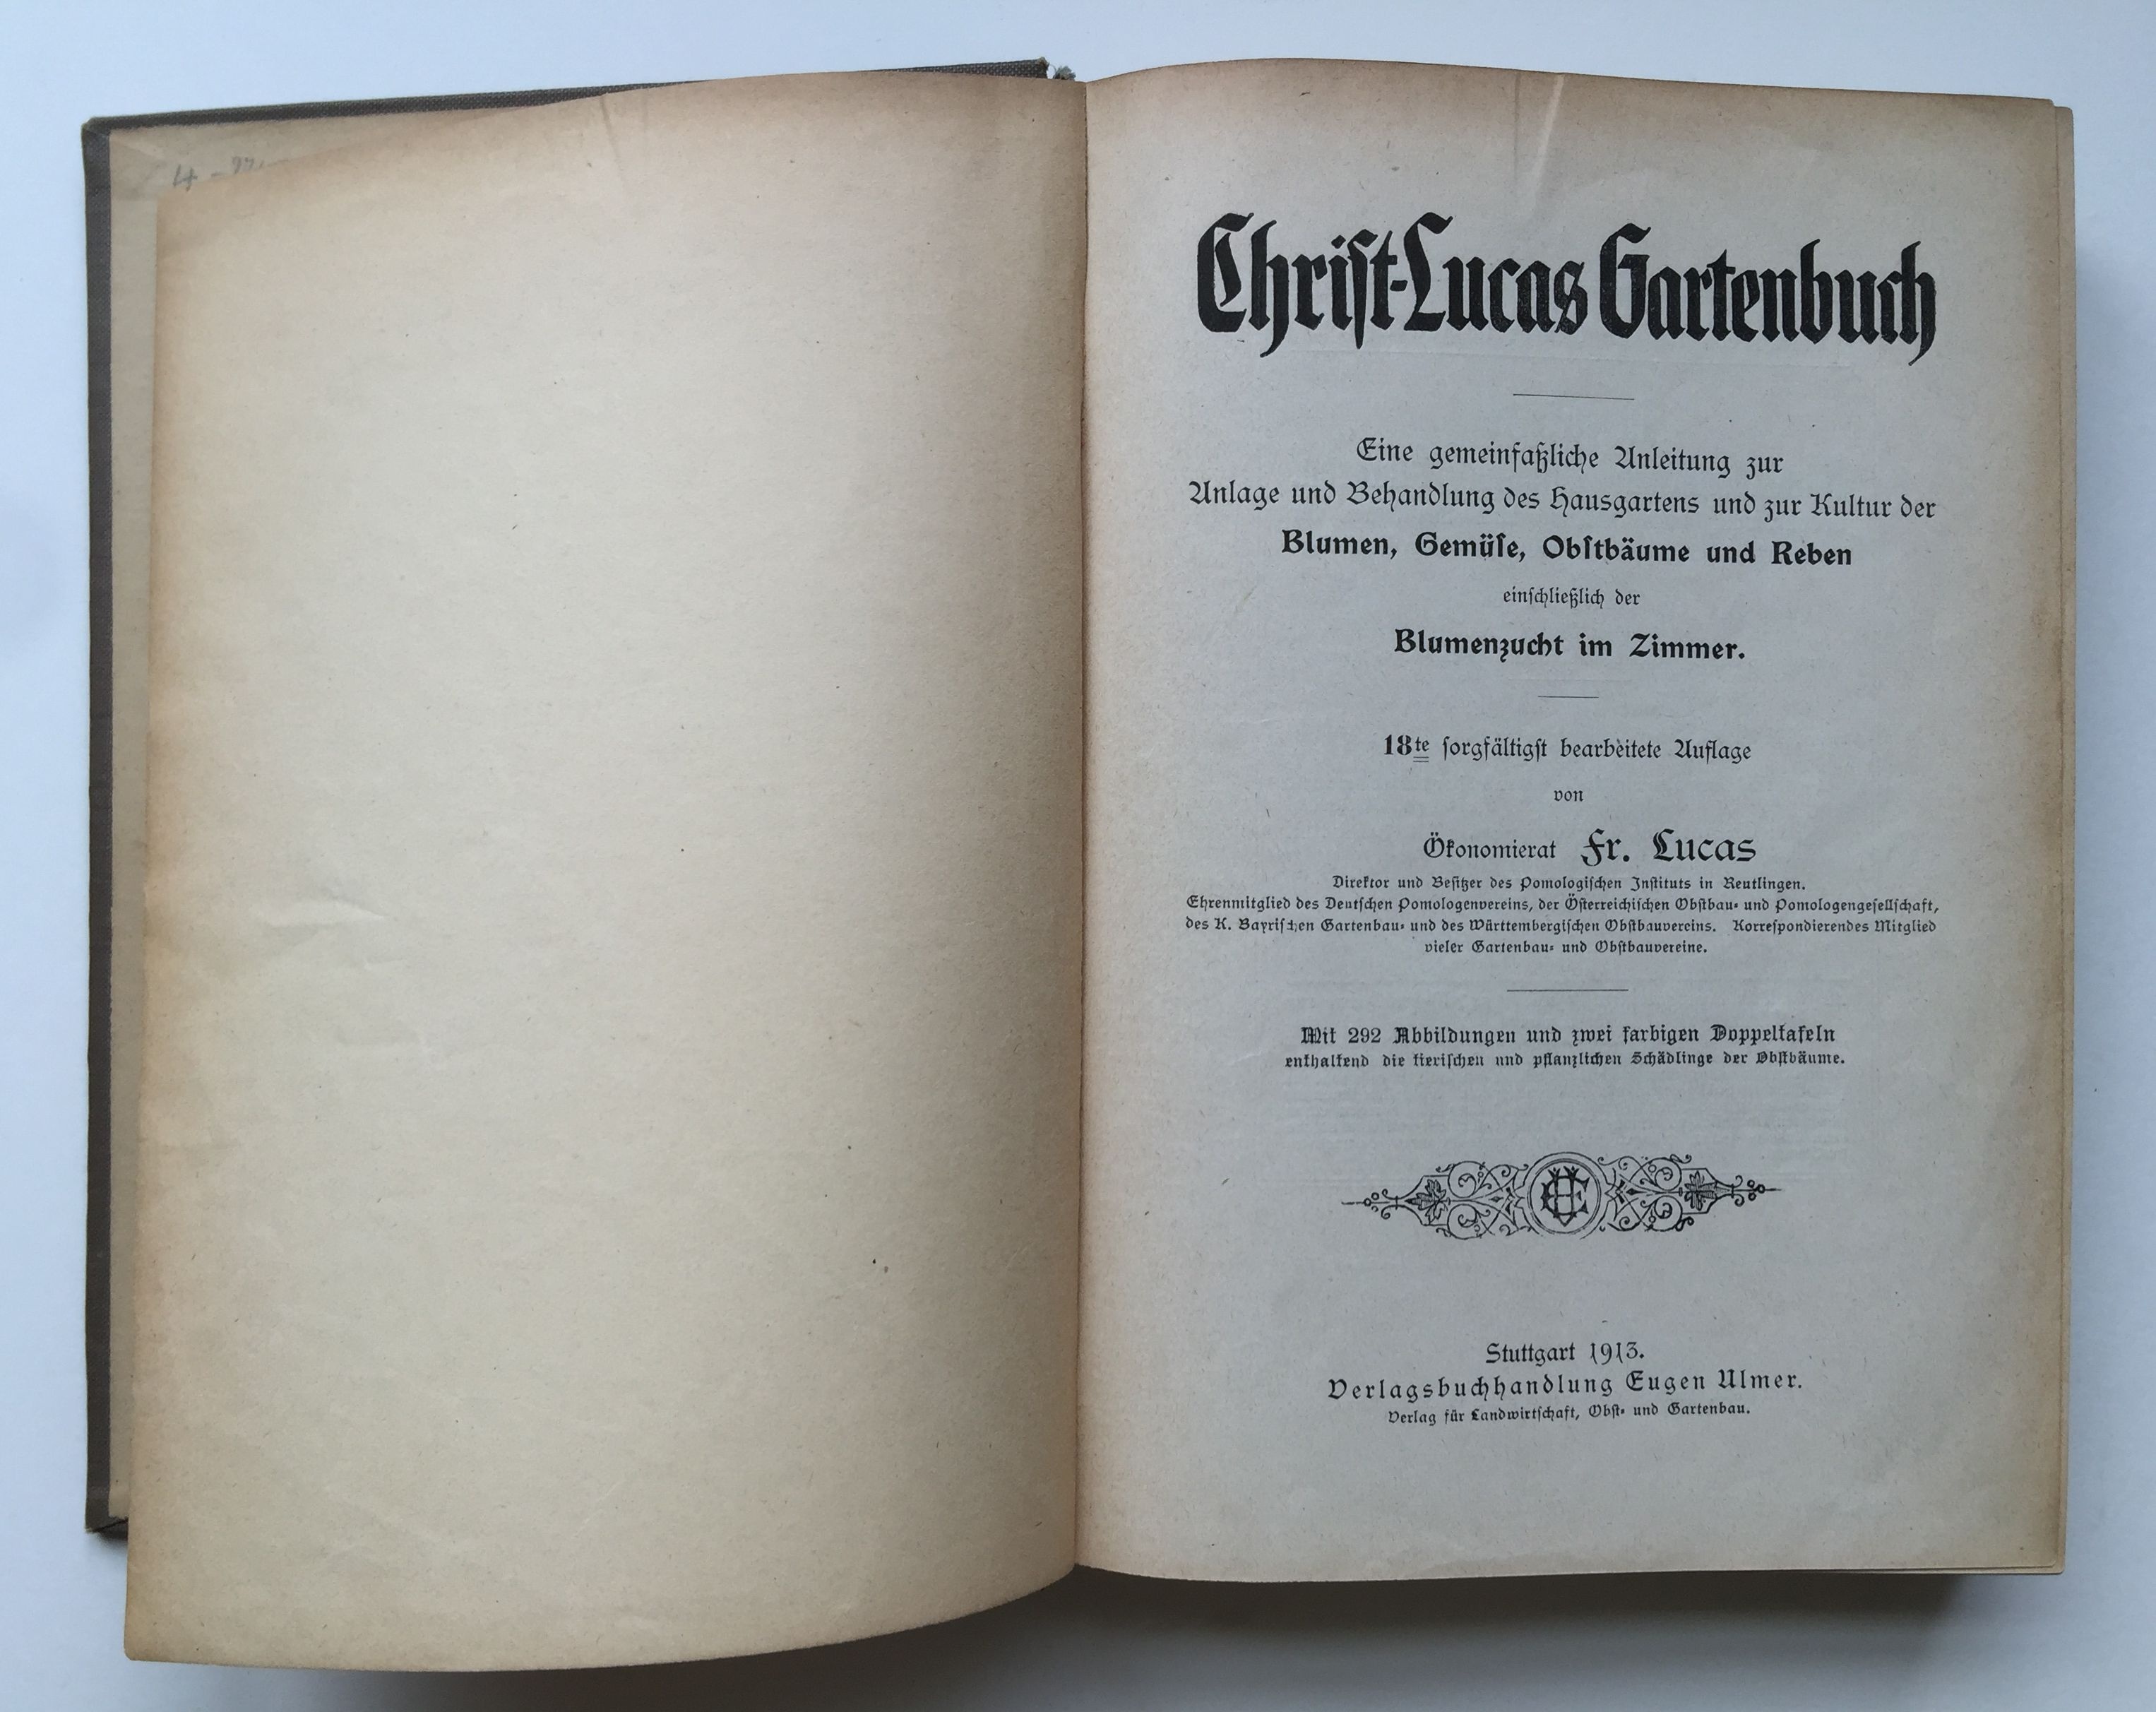 Friedrich Lucas, Christ-Lucas Gartenbuch, 18. Auflage, 1913 (Taunus-Rhein-Main - Regionalgeschichtliche Sammlung Dr. Stefan Naas CC BY-NC-SA)